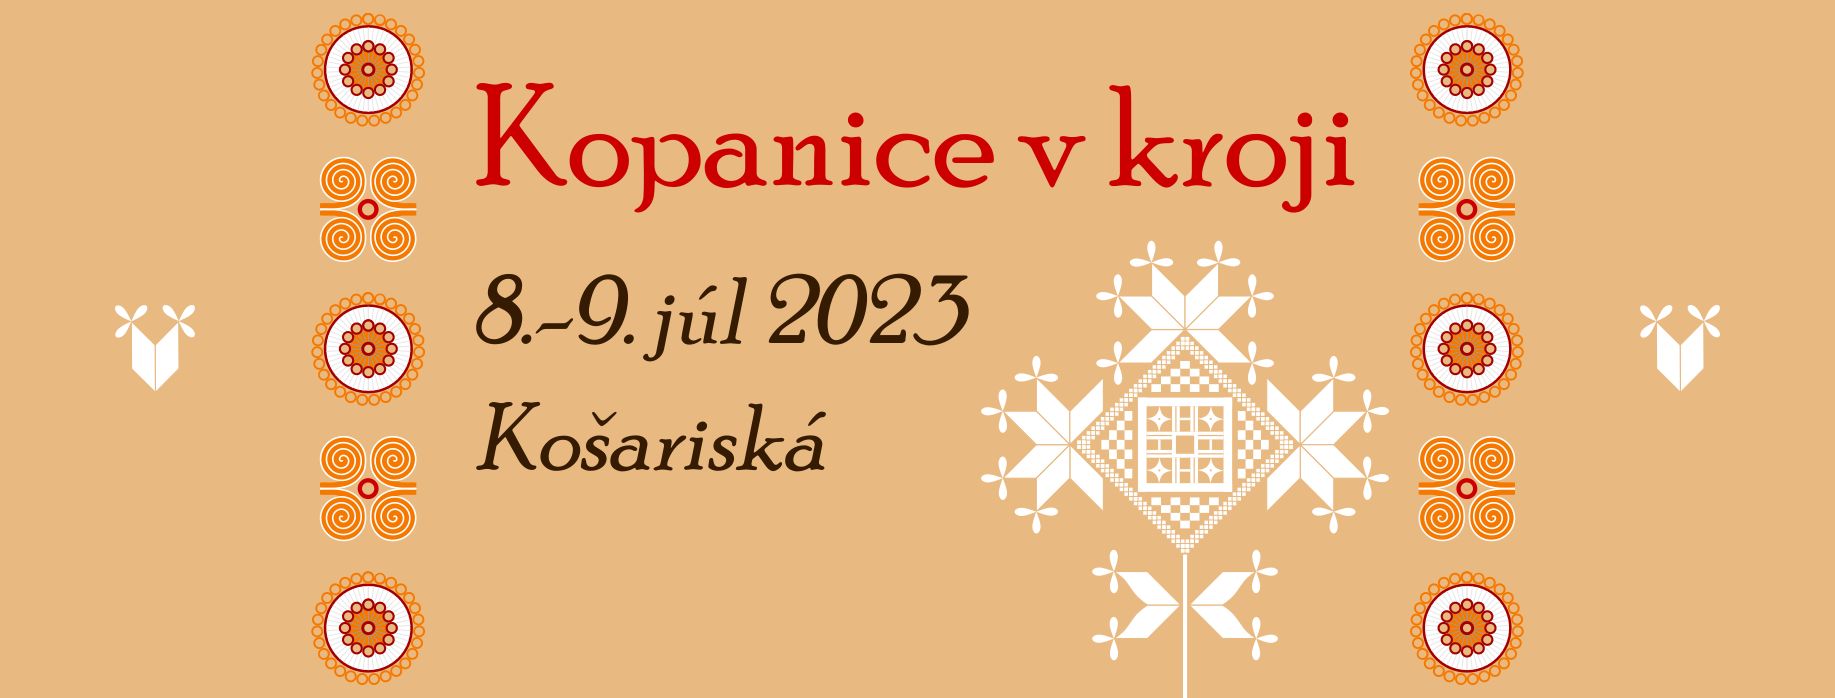 Kopanice v kroji 2023 Košariská - 4. ročník